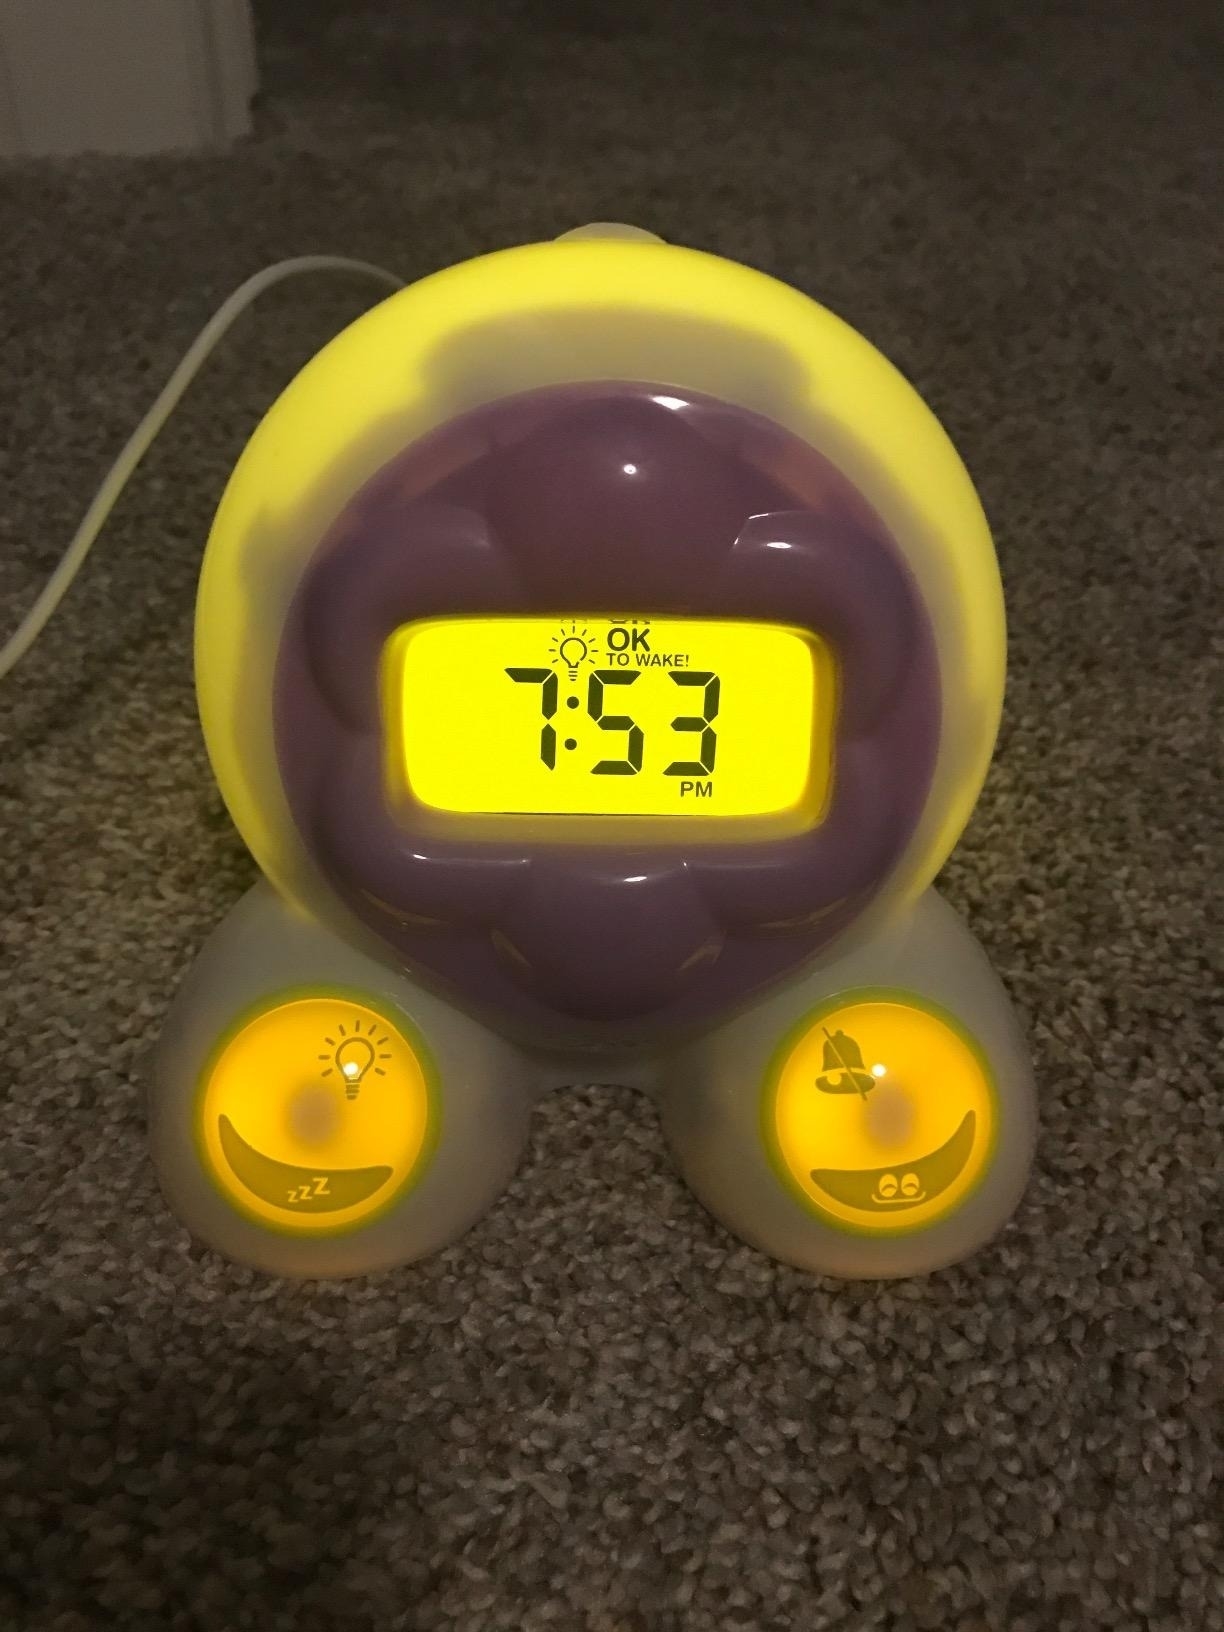 An alarm clock glows